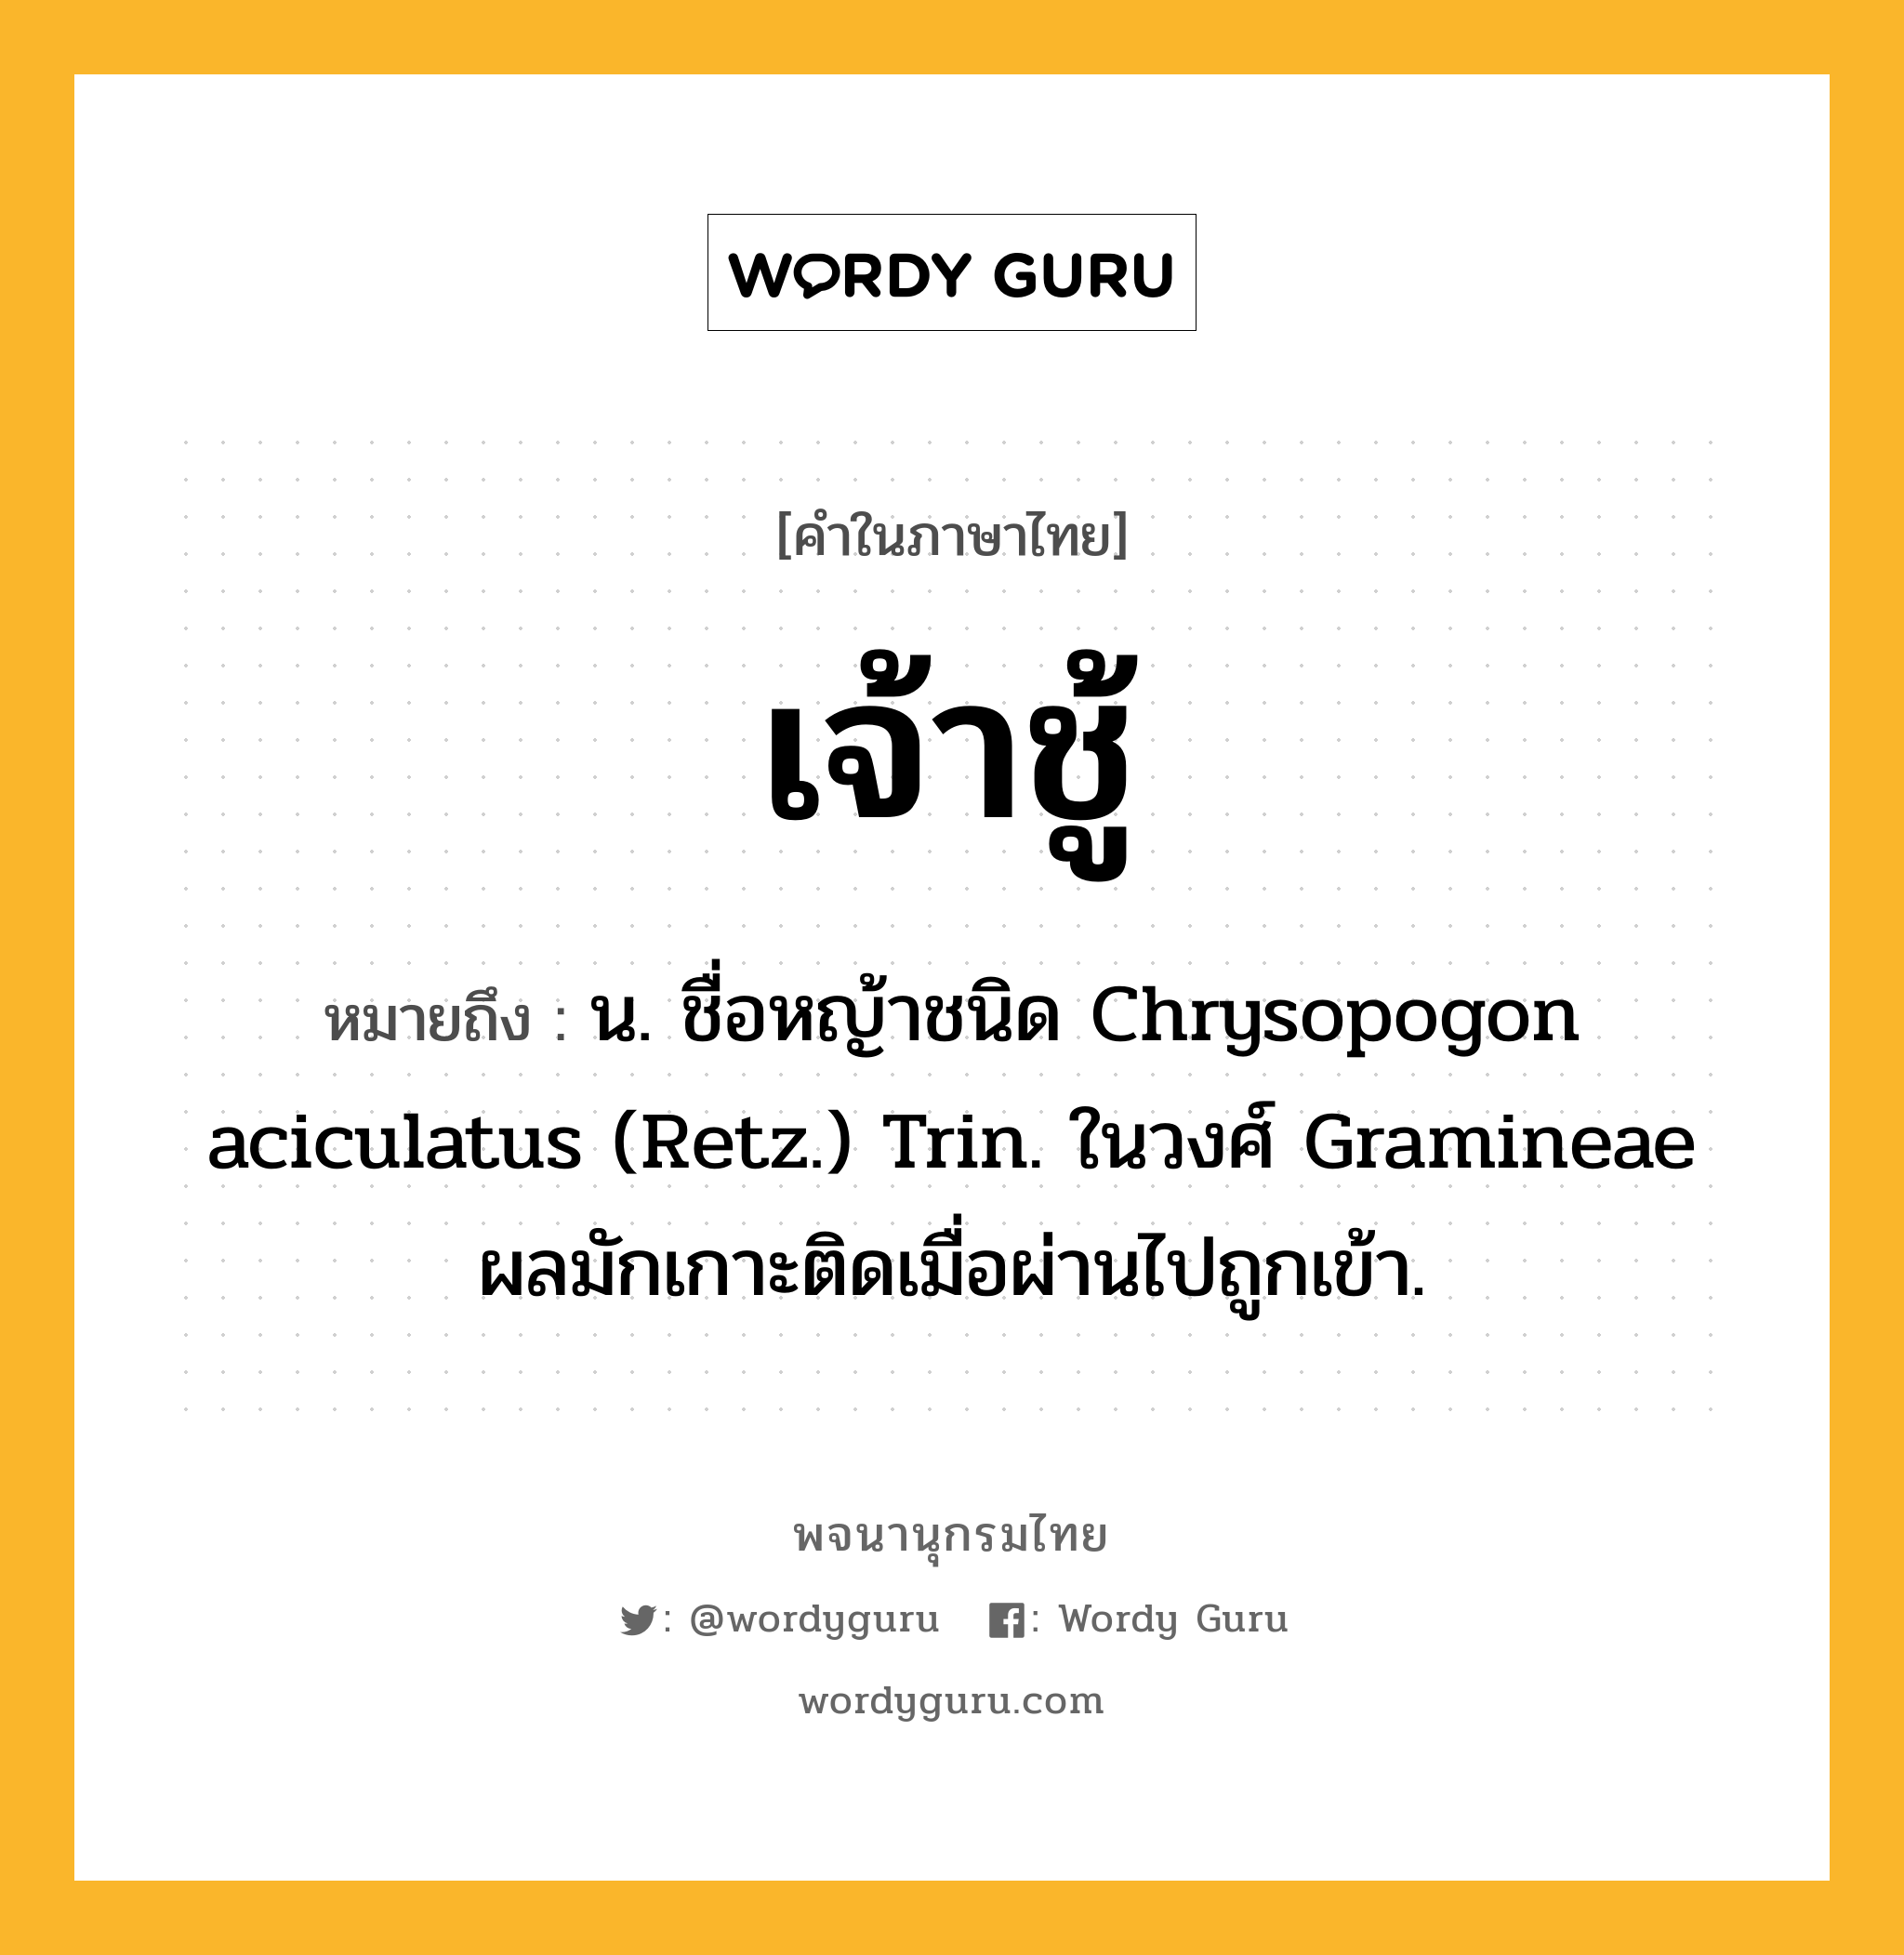 เจ้าชู้ ความหมาย หมายถึงอะไร?, คำในภาษาไทย เจ้าชู้ หมายถึง น. ชื่อหญ้าชนิด Chrysopogon aciculatus (Retz.) Trin. ในวงศ์ Gramineae ผลมักเกาะติดเมื่อผ่านไปถูกเข้า.